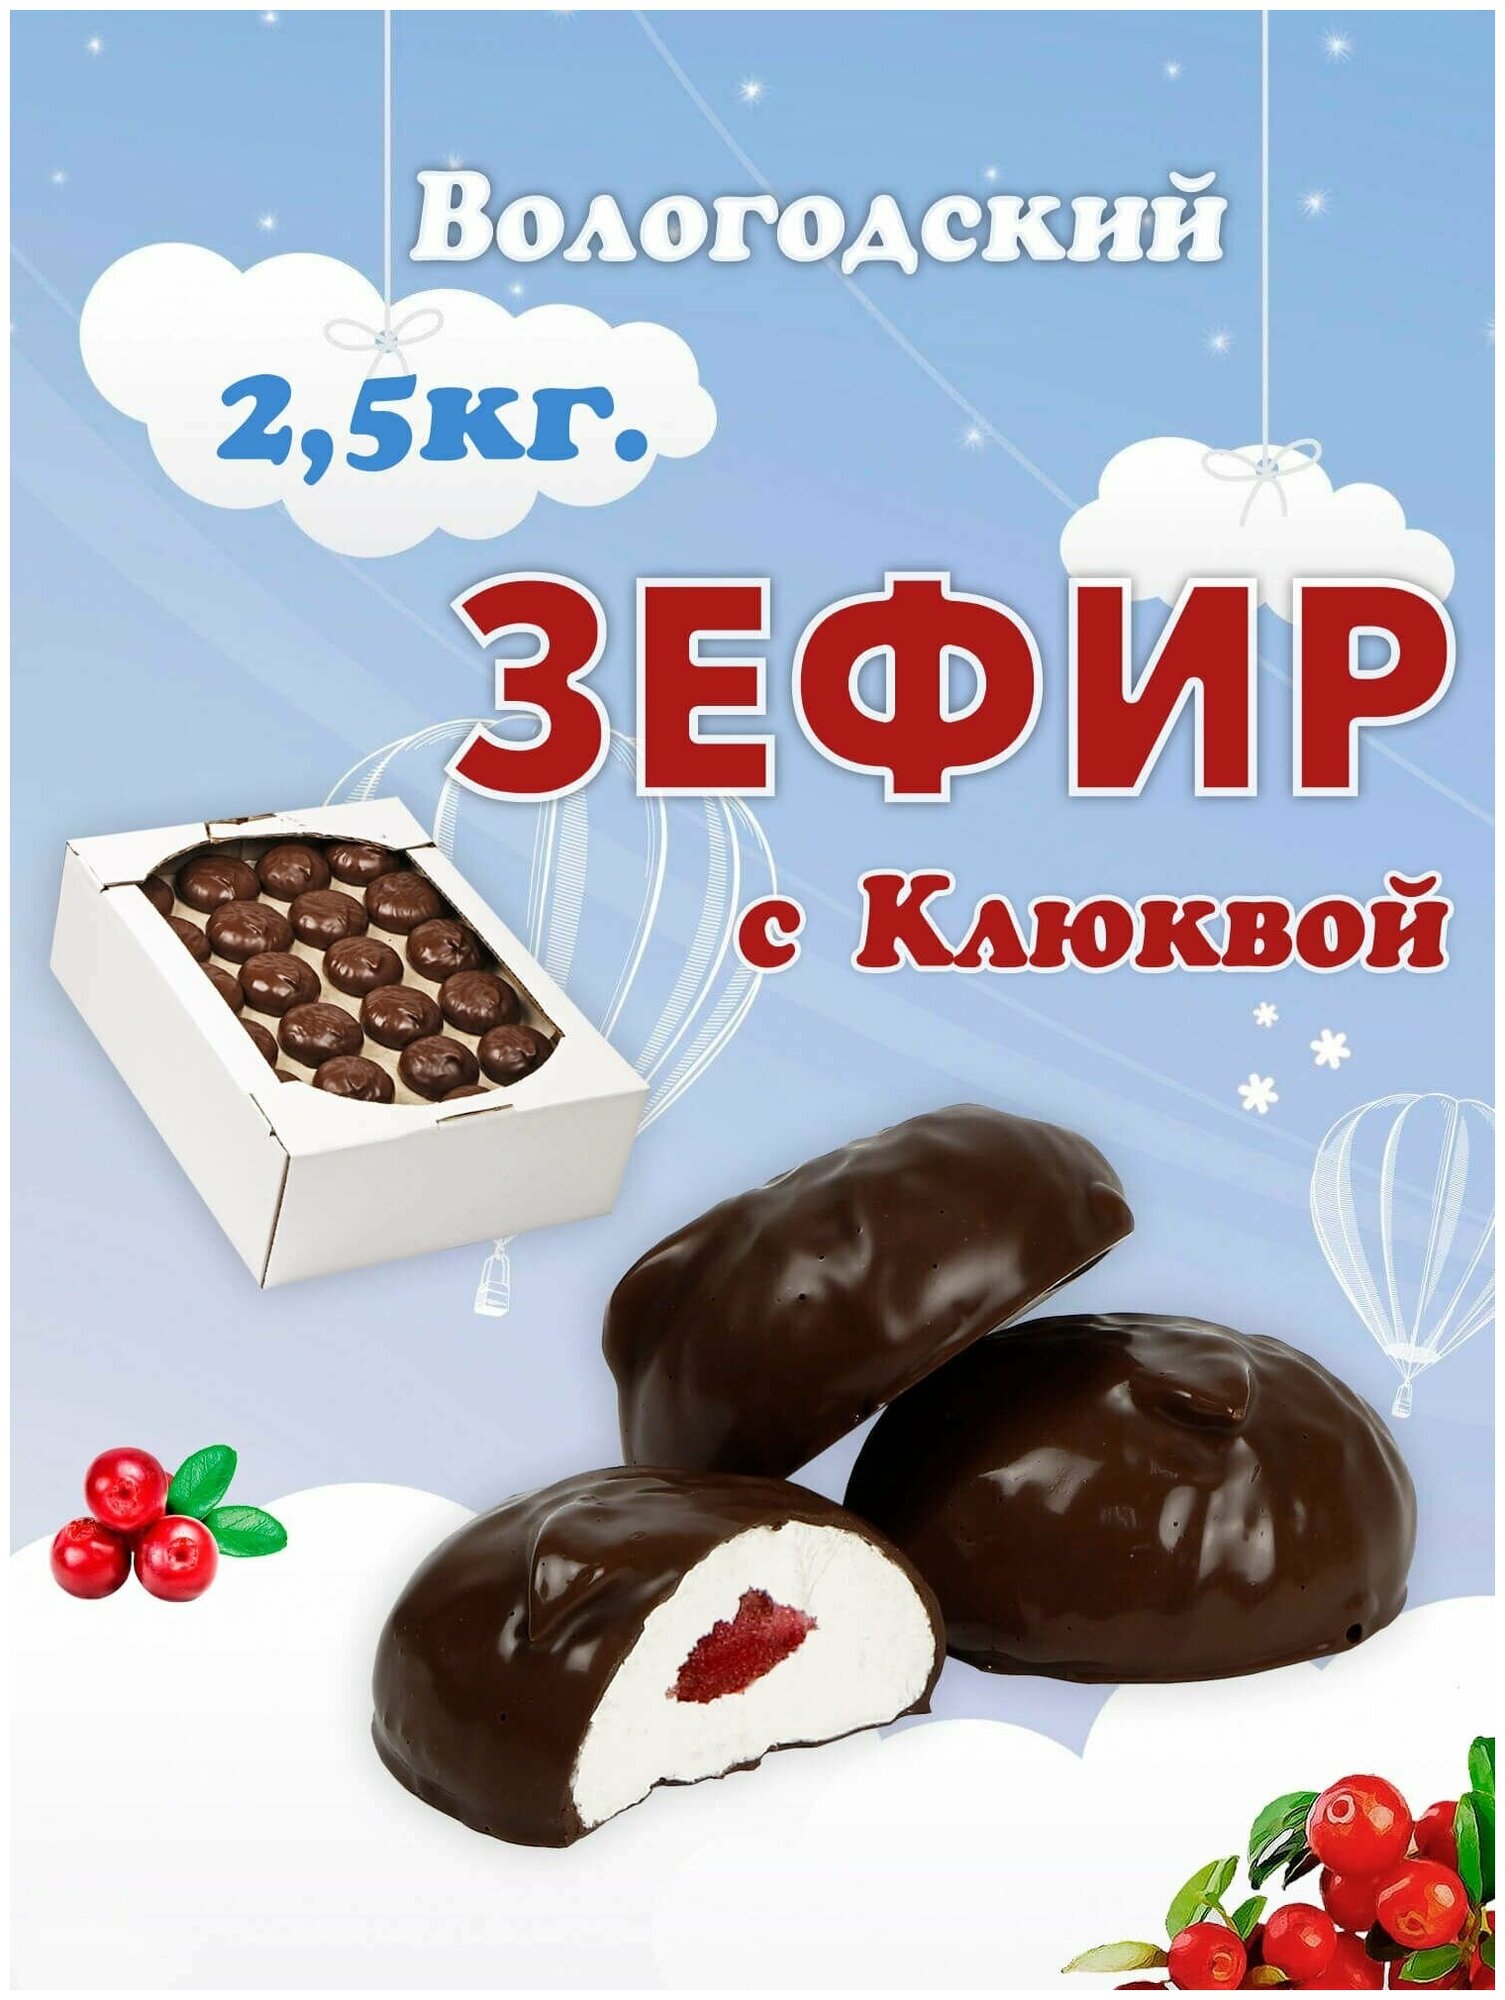 Зефир Вологодский в шоколаде с Клюквой 2,5кг.